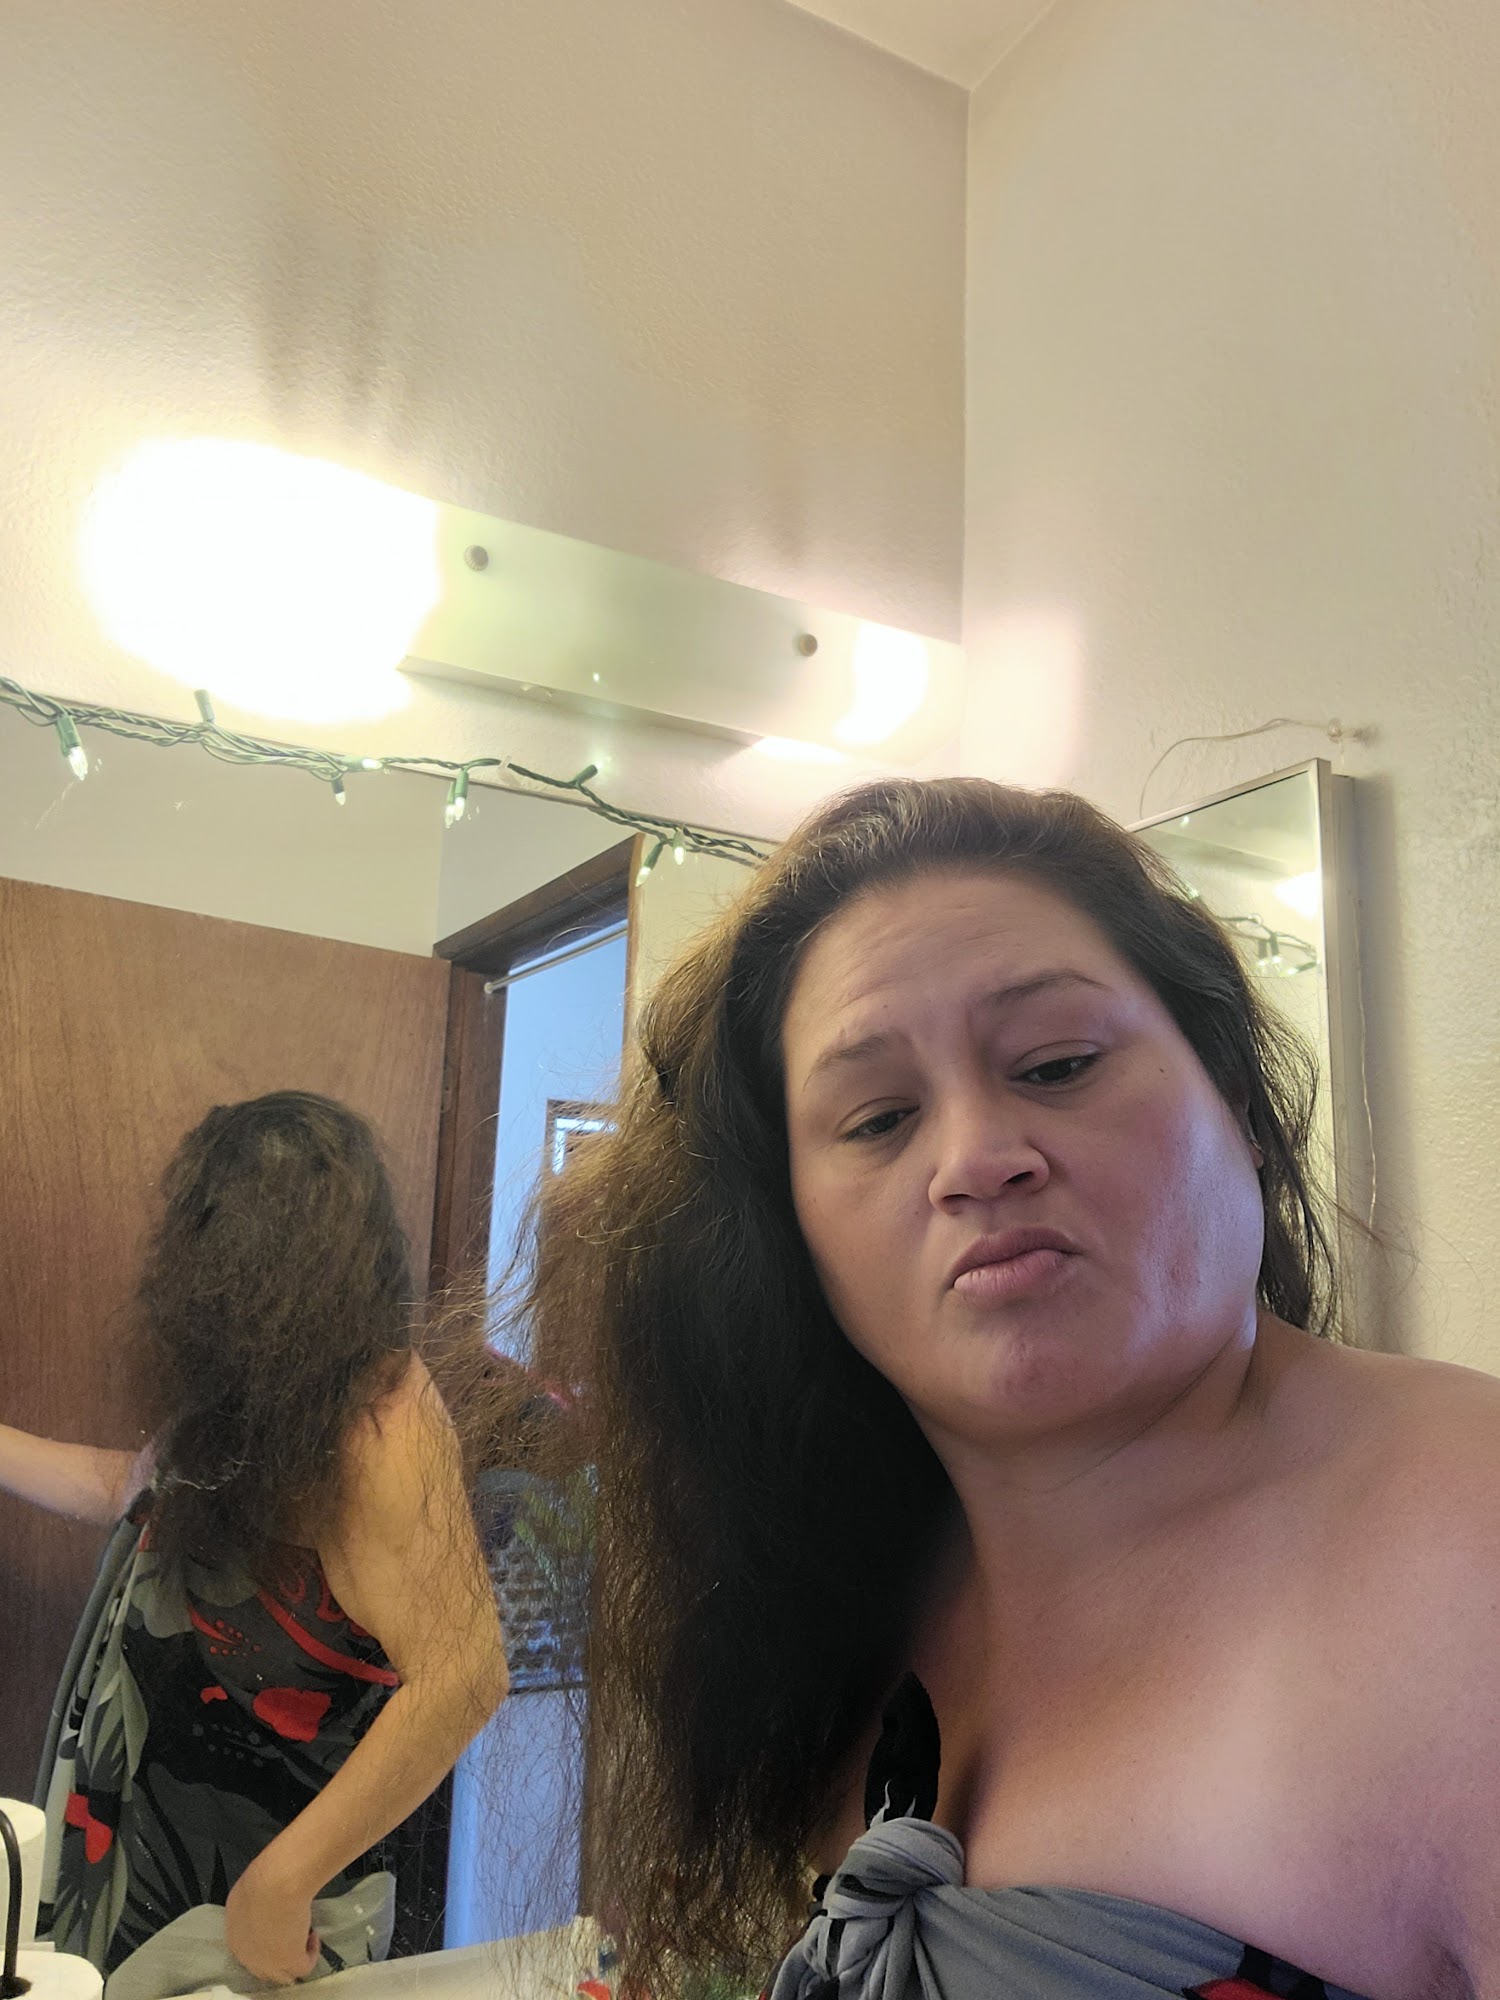 Graciela's Hair Salon 67 1185 Hawaiʻi Belt Rd #36, Waimea Hawaii 96743